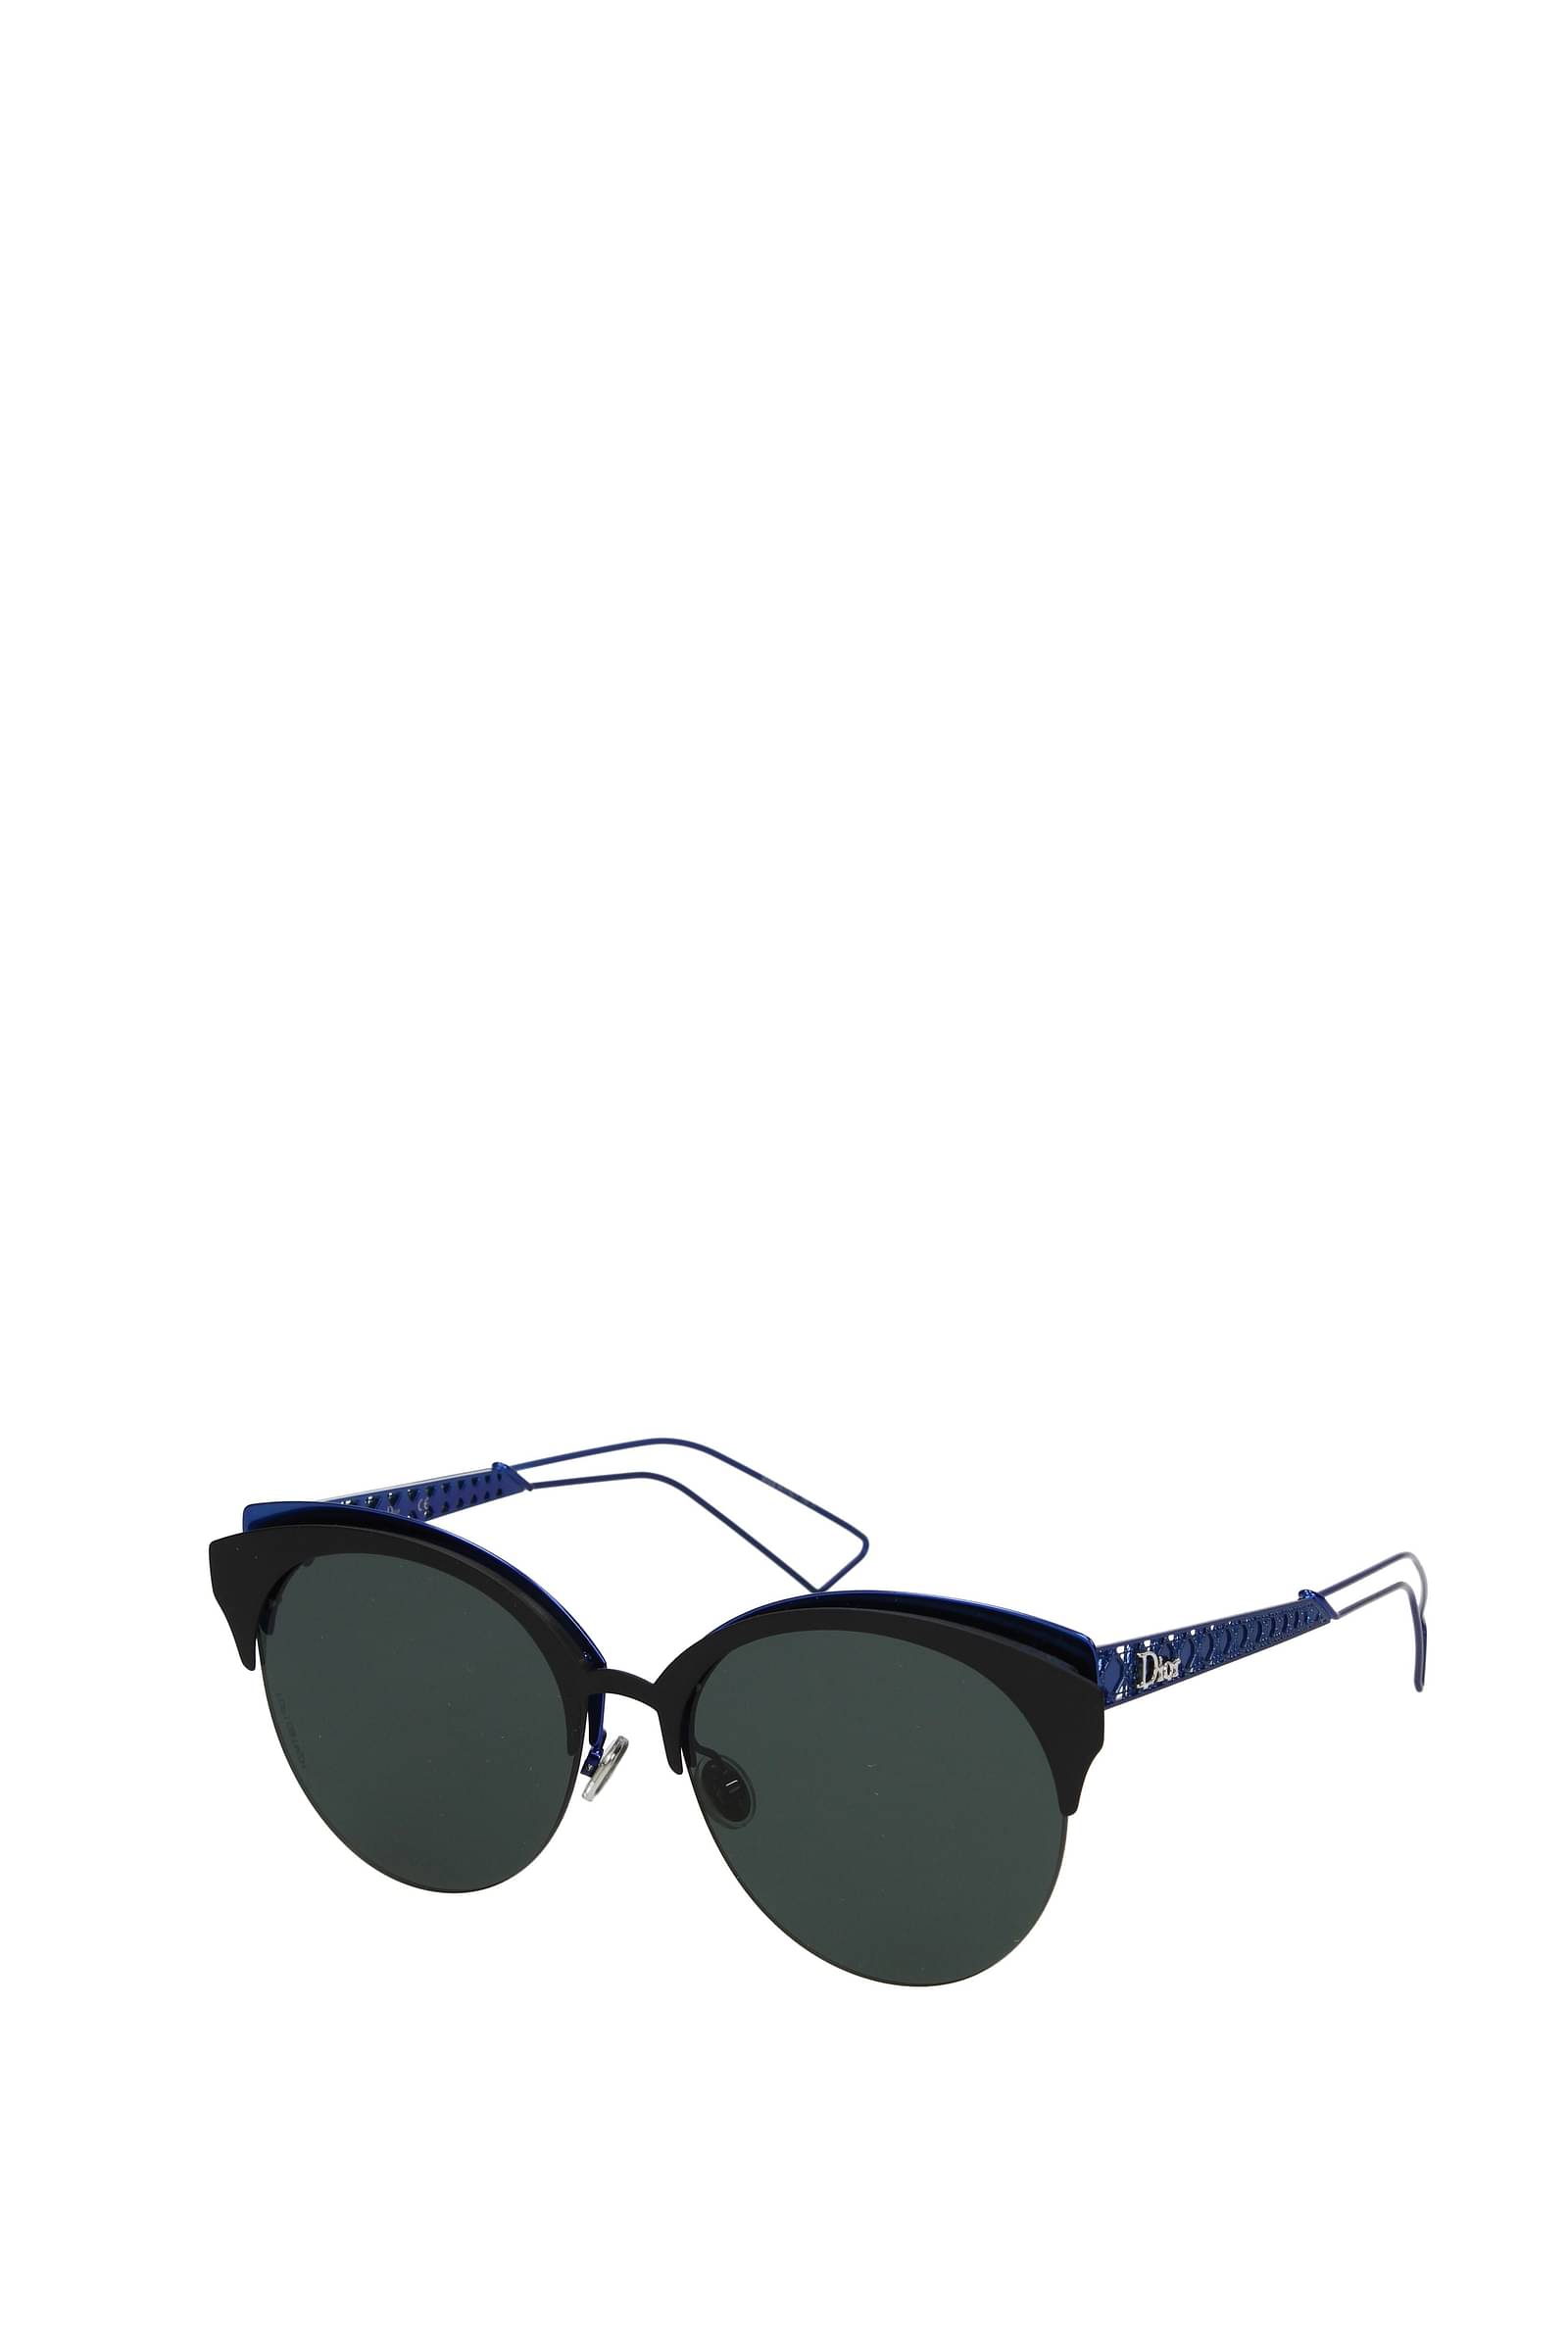 Christian Dior Sunglasses  Tín đồ hàng hiệu